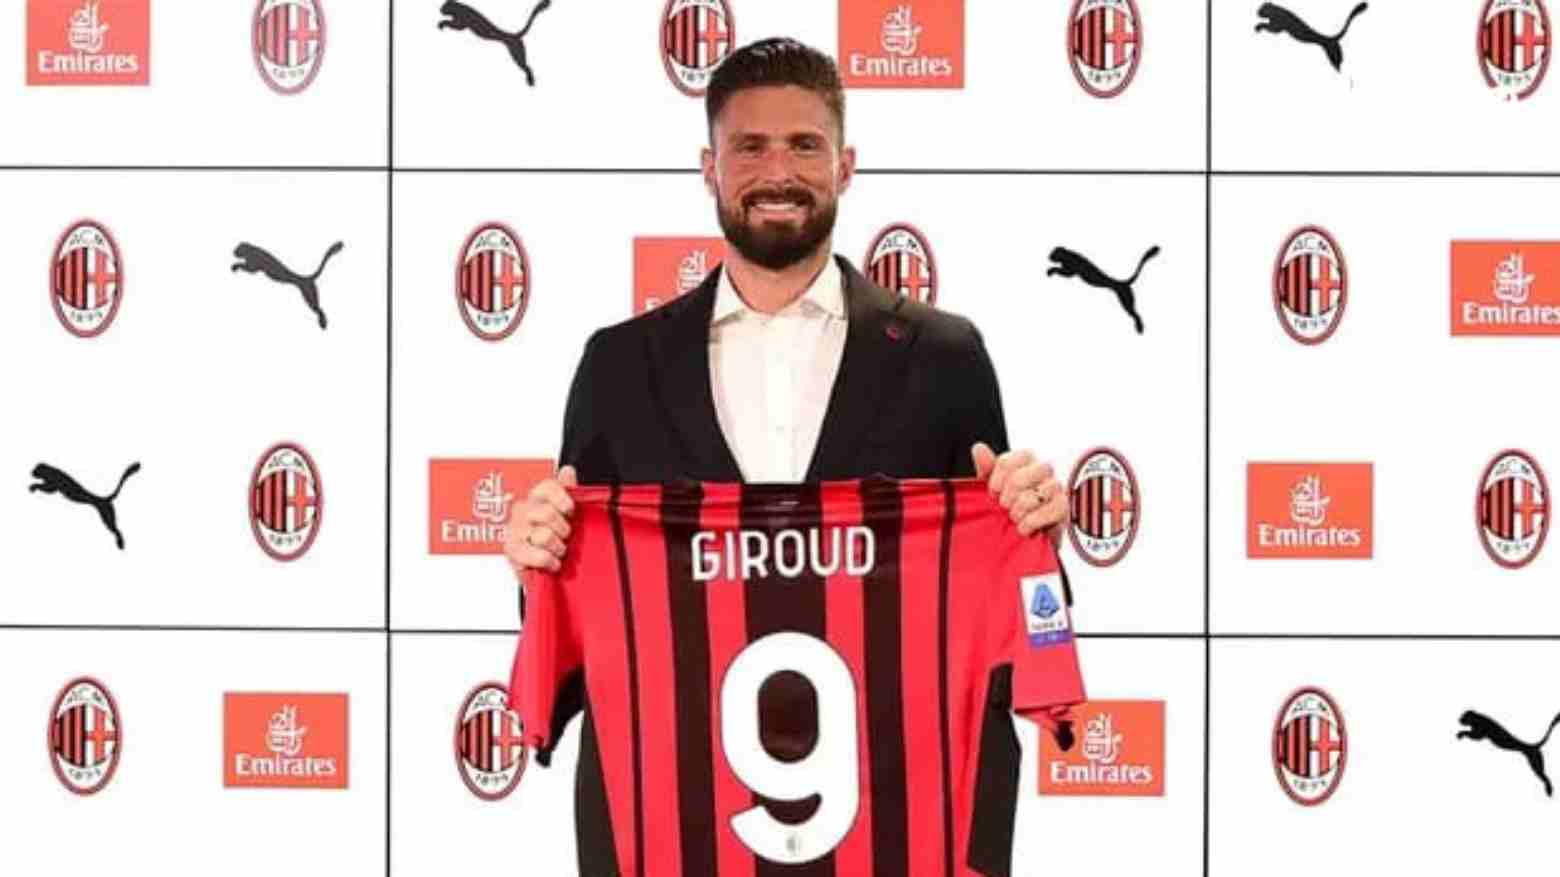 Pindah ke AC Milan, Giroud Diberi Nomor Terkutuk